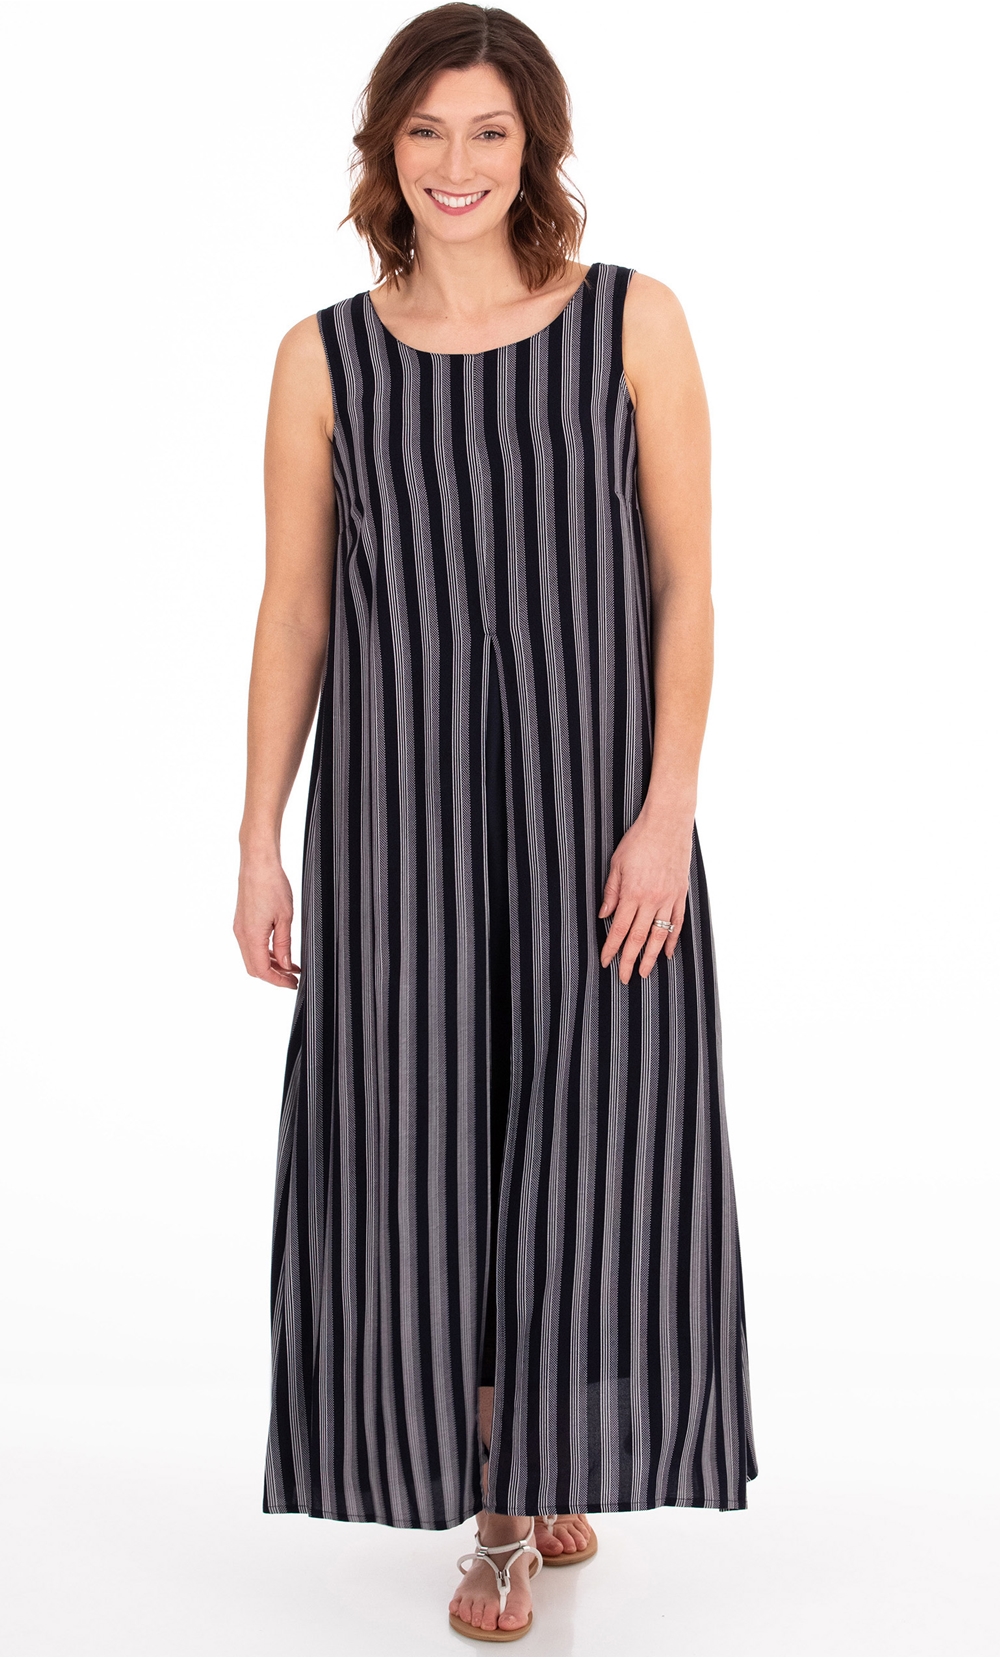 Striped Sleeveless Layered Maxi Dress